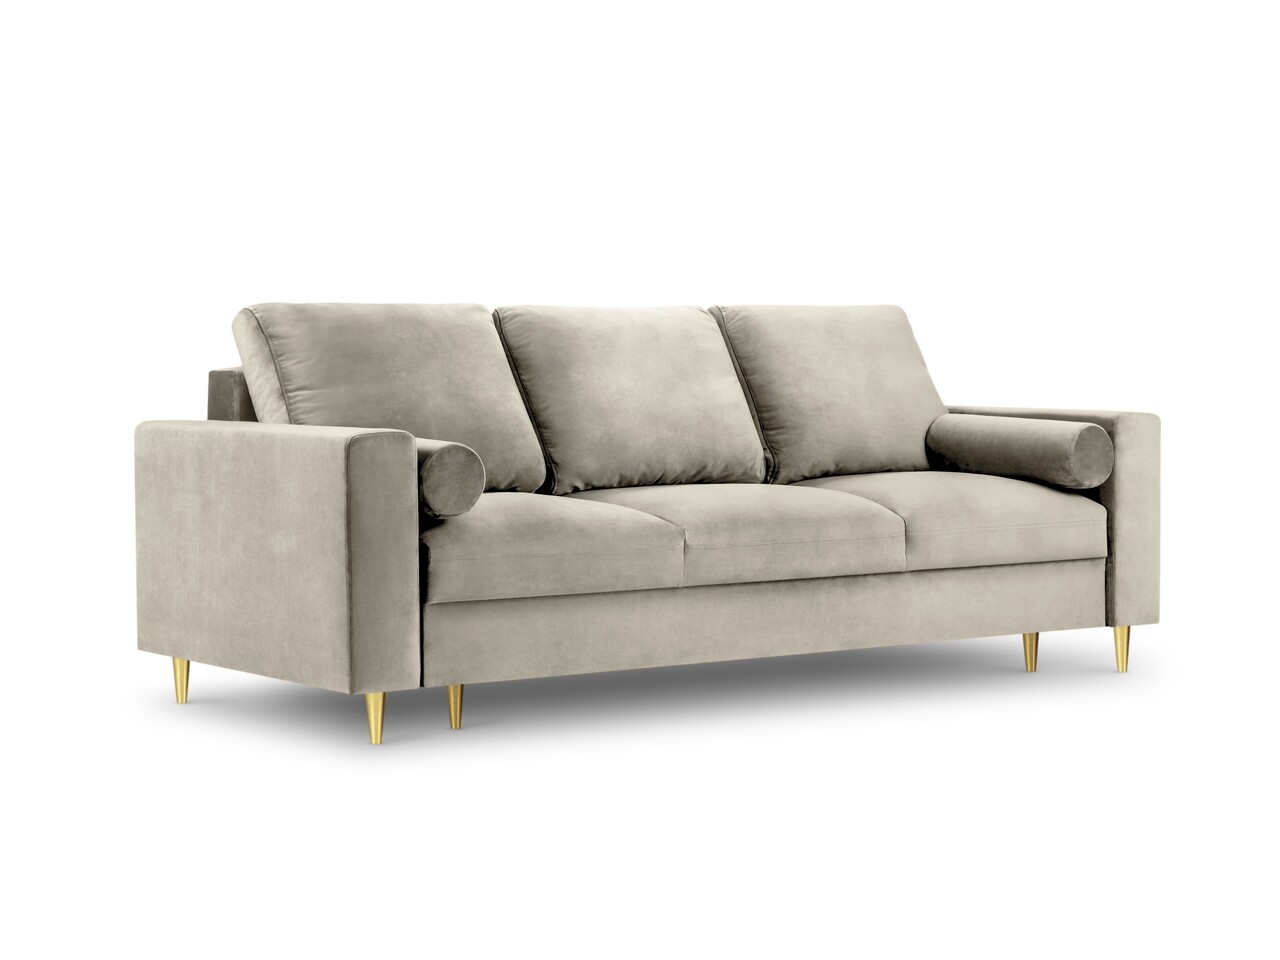 Mazzini sofas kanapéágy, mimosa, mazzini kanapé, 3 ülőhely, tárolódobozzal, 220x100x92 cm, bársony, bézs